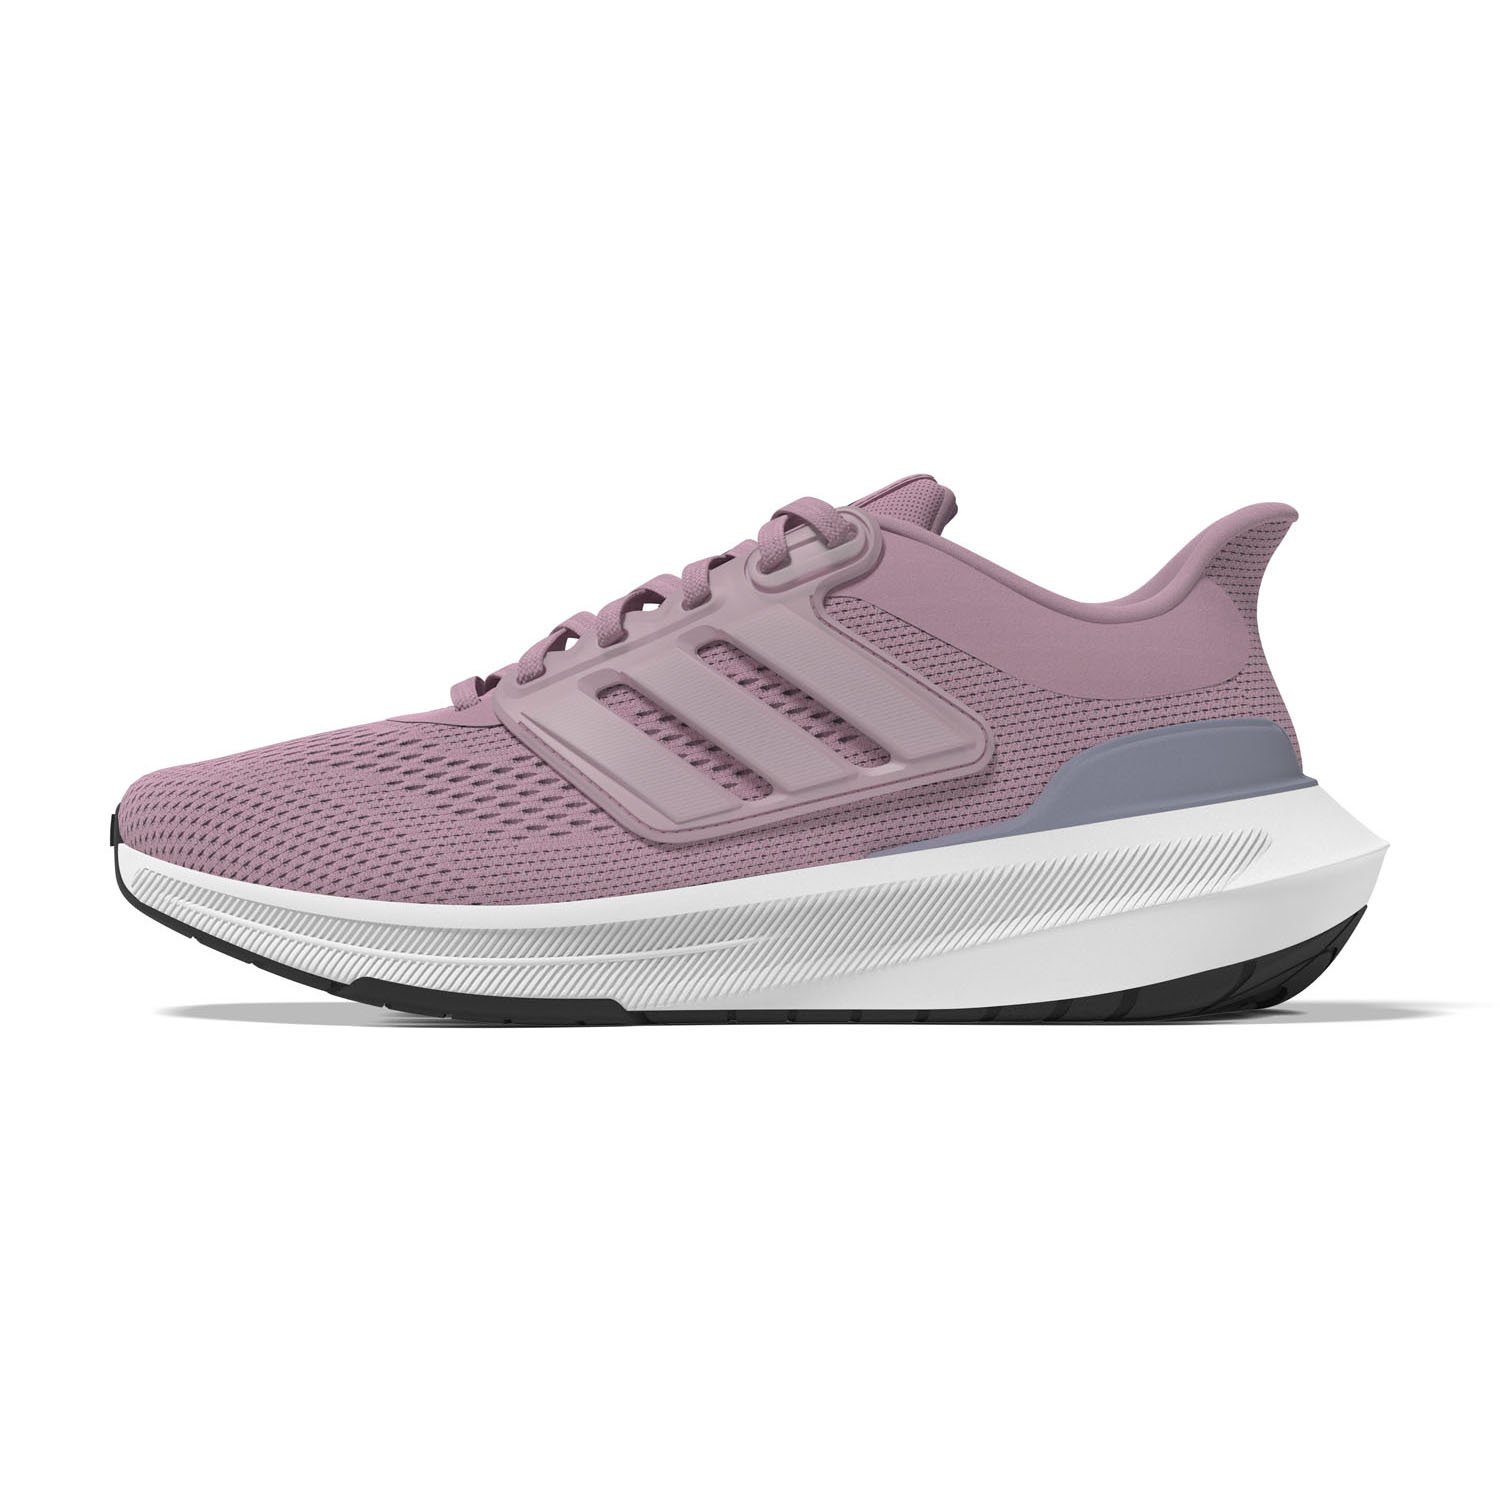 Adidas Ultrabounce Kadın Koşu Ayakkabısı - Pembe - 1